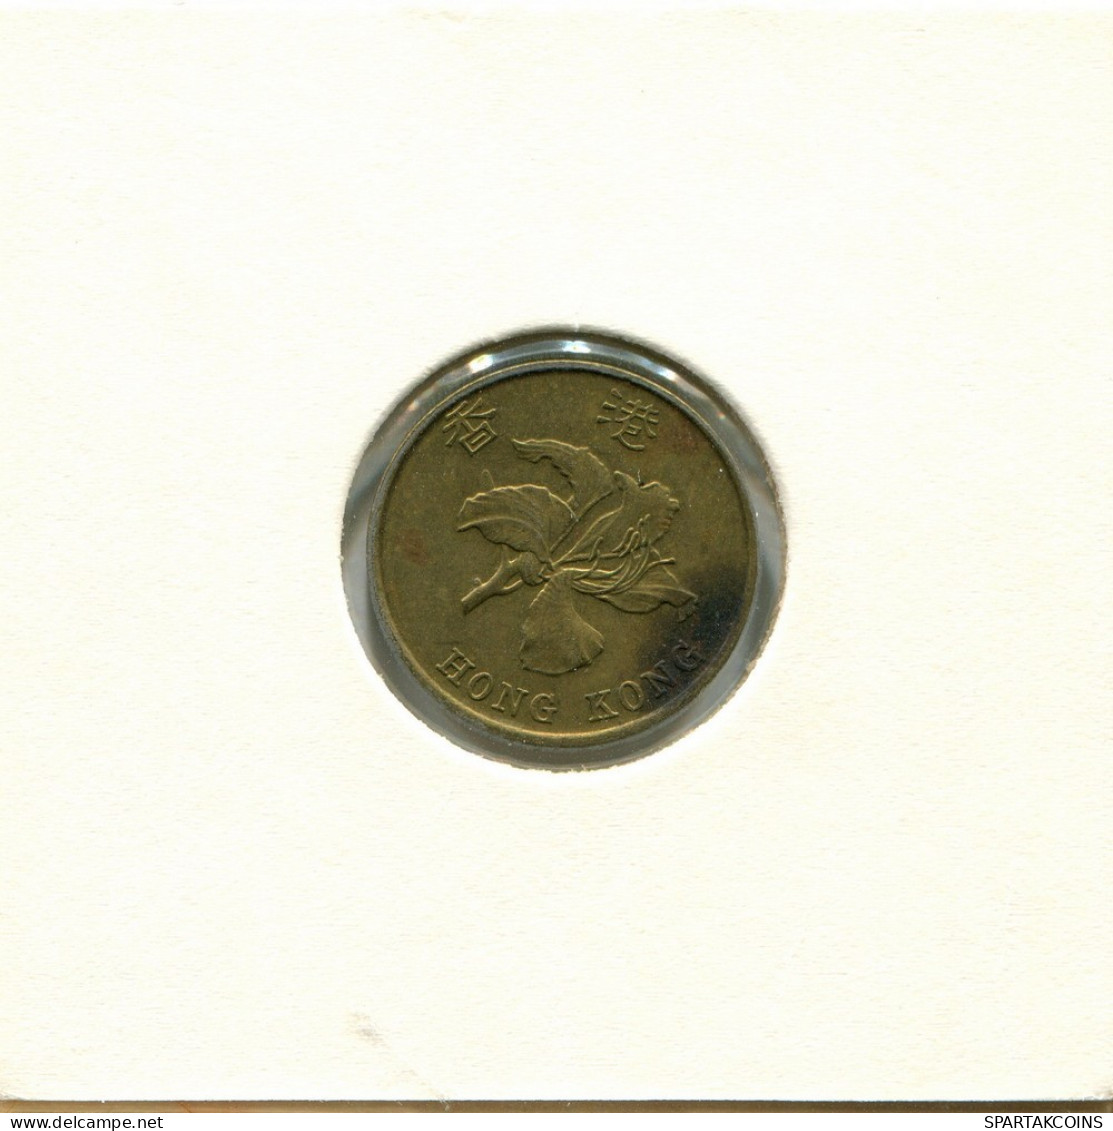 10 CENTS 1997 HONG KONG Moneda #AY549.E.A - Hong Kong